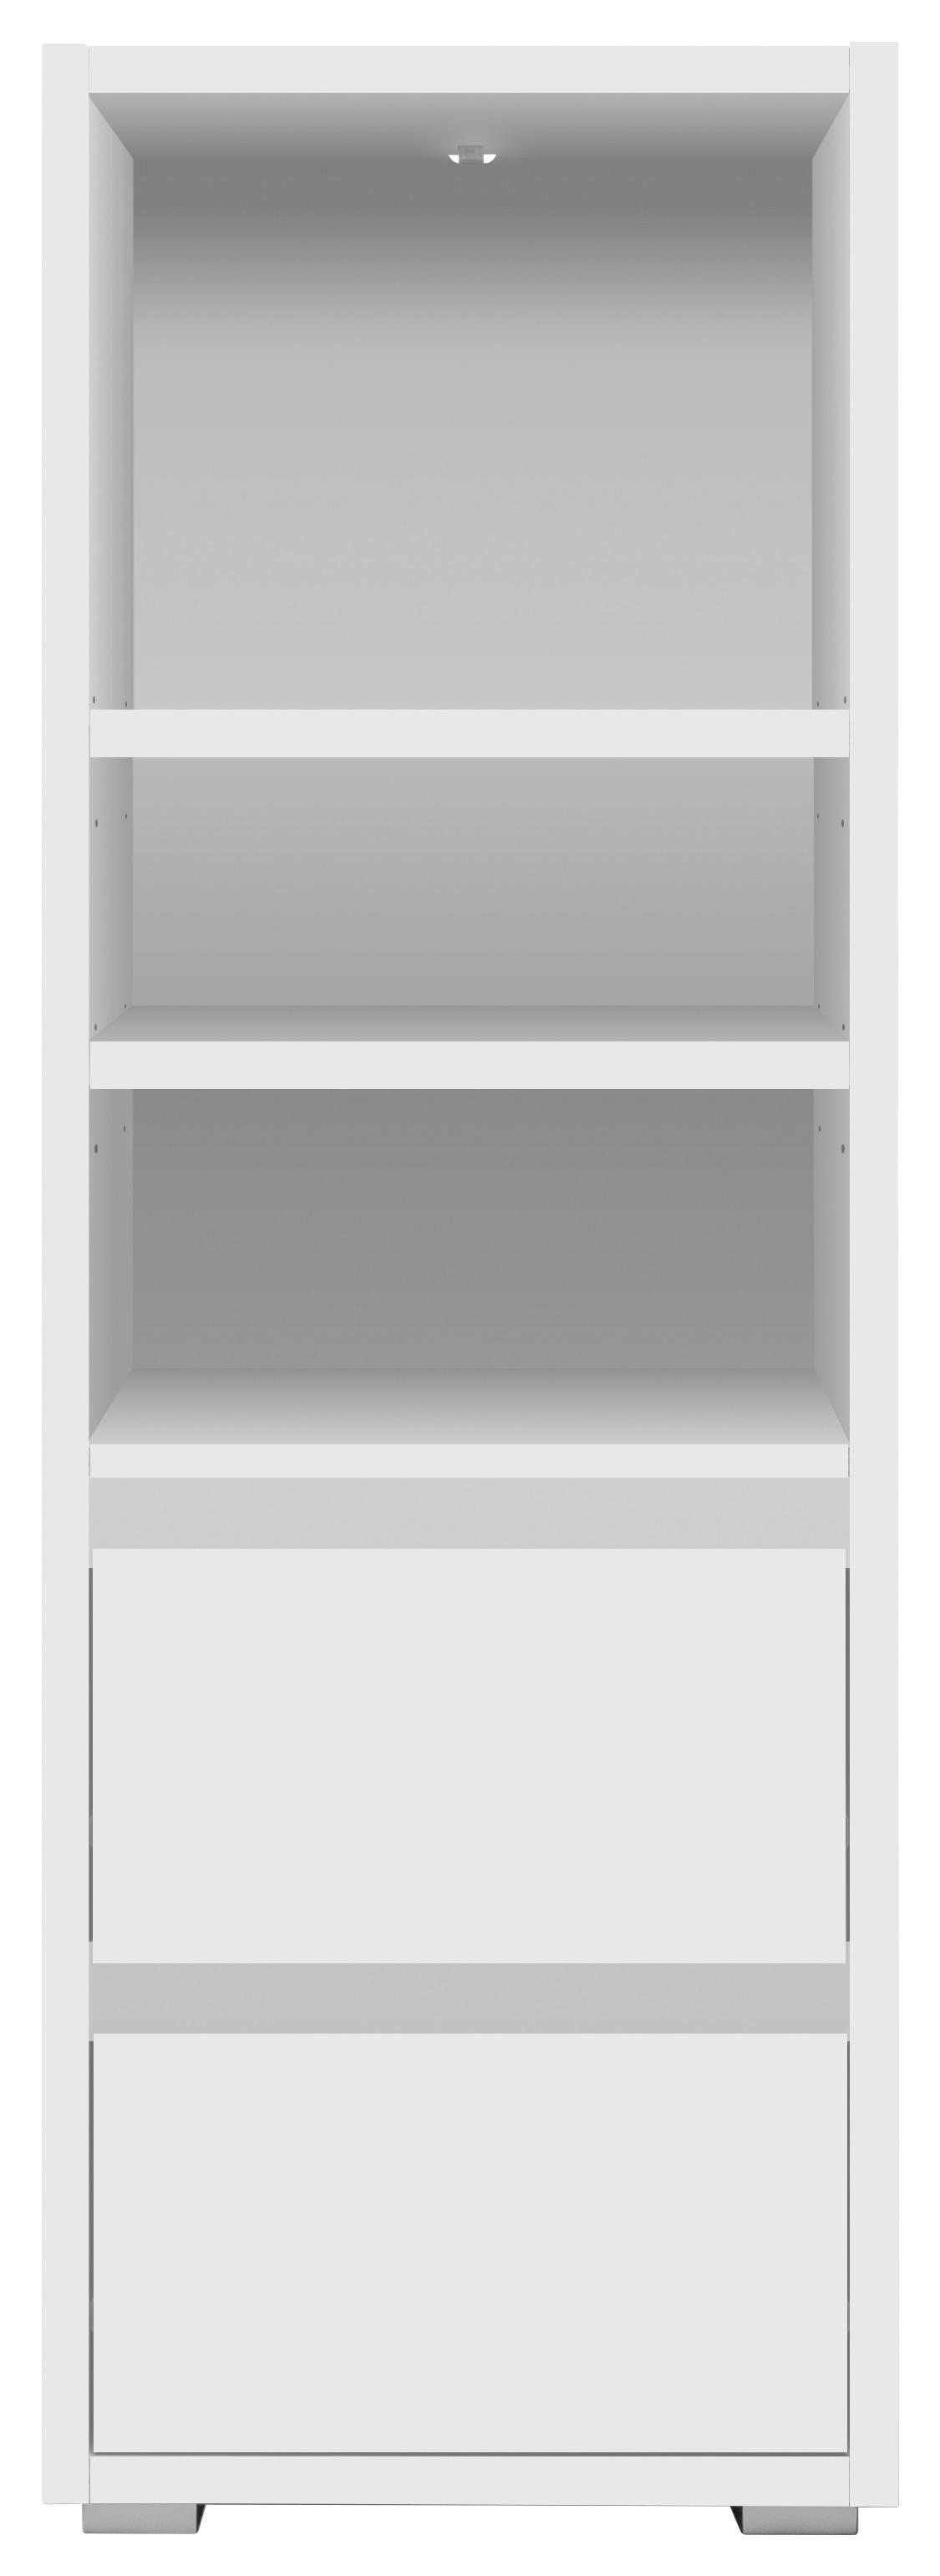 REGALELEMENT Weiß  - Silberfarben/Weiß, KONVENTIONELL (45/131/37cm) - MID.YOU